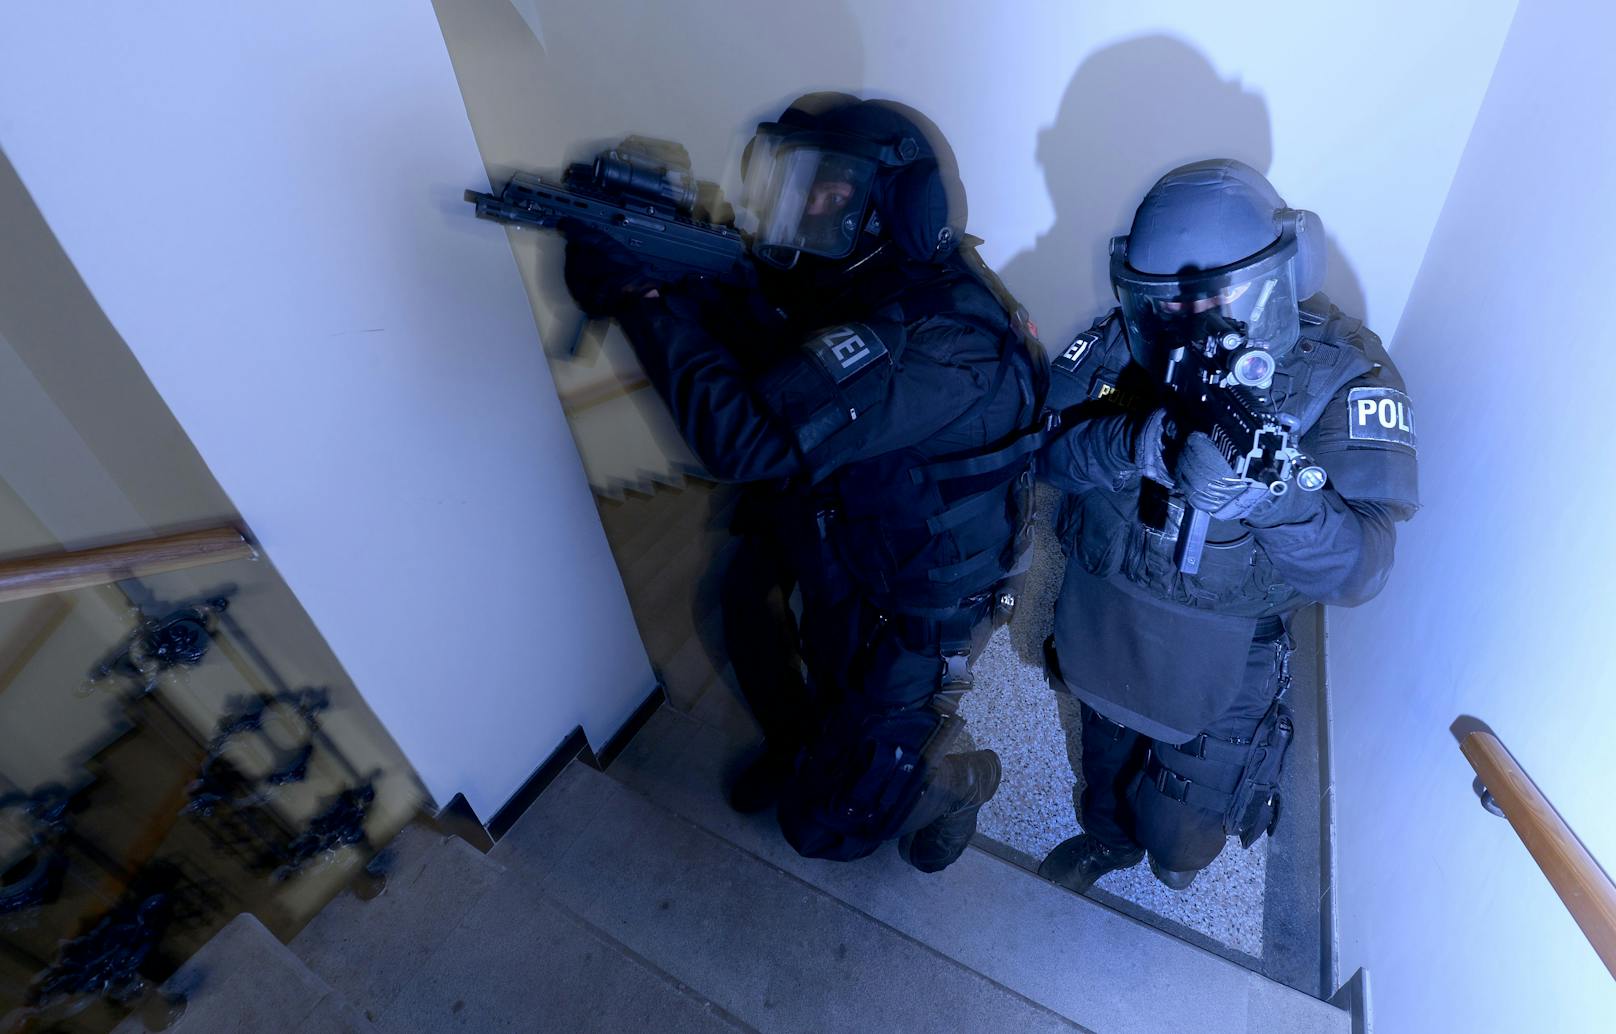 Polizisten der Sondereinheit "Einsatzkommando Cobra" durchsuchten das Haus. (Symbolbild)